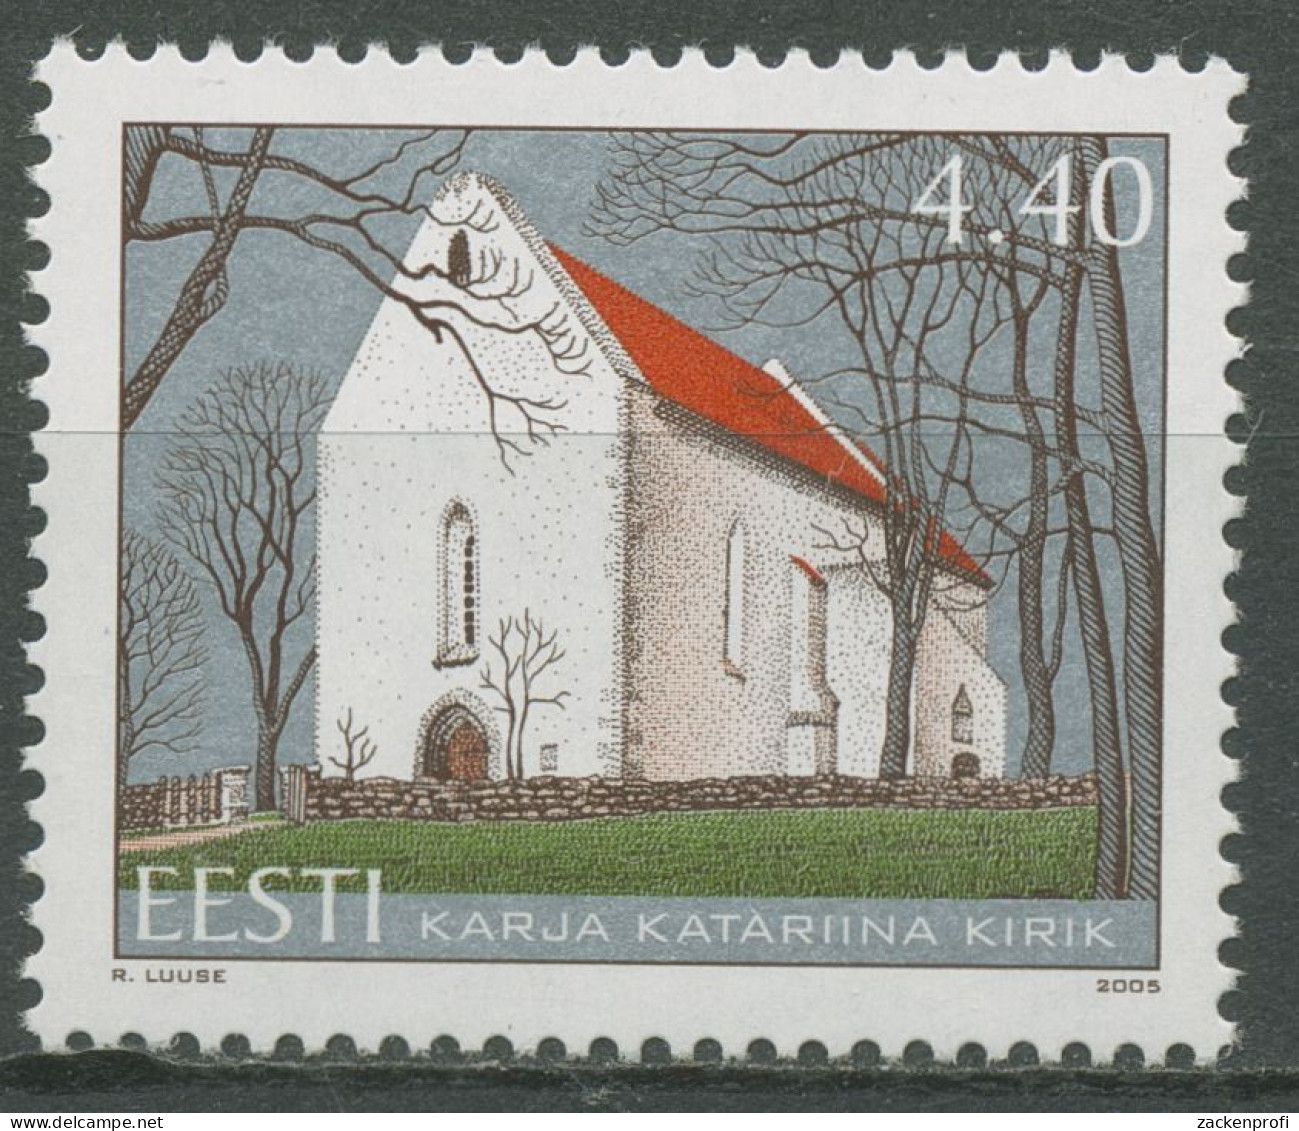 Estland 2005 St.-Katharinen-Kirche Karja 526 Postfrisch - Estland